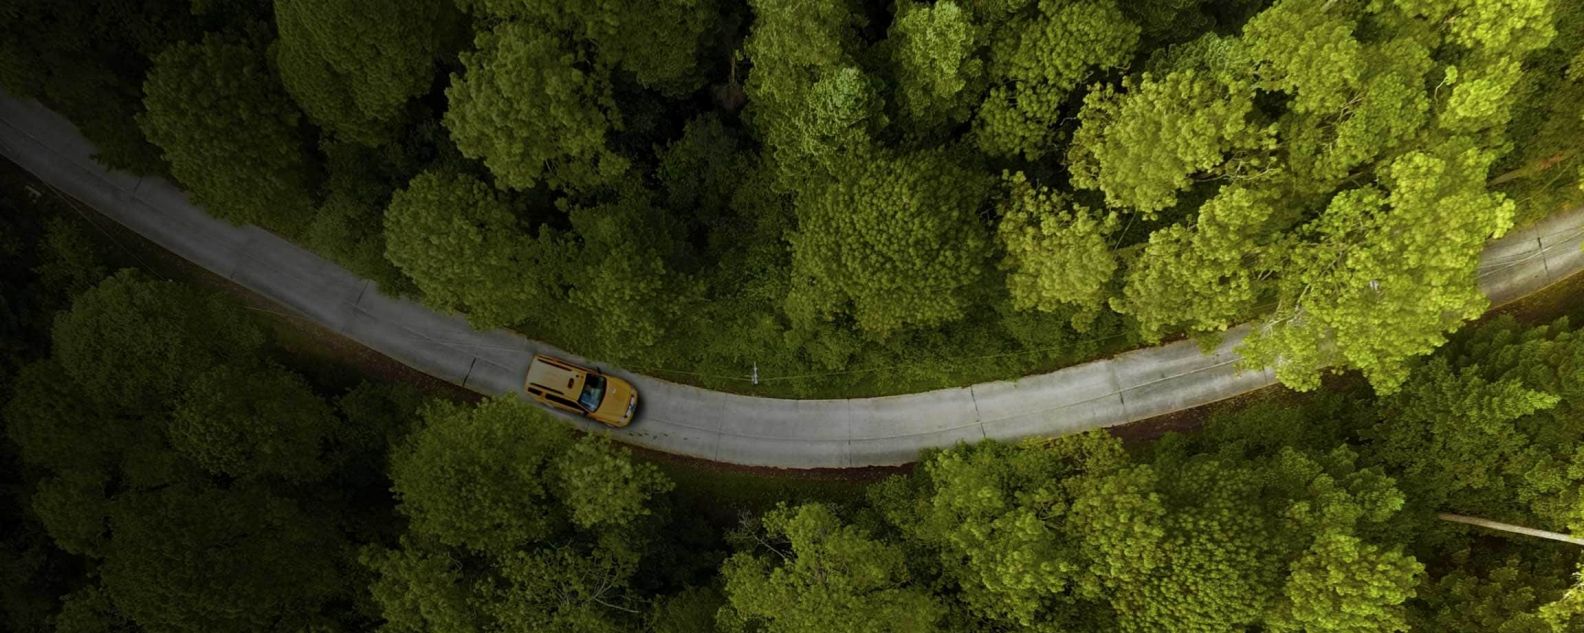 Vista aérea de un automóvil avanzando por una carretera con árboles a ambos lados